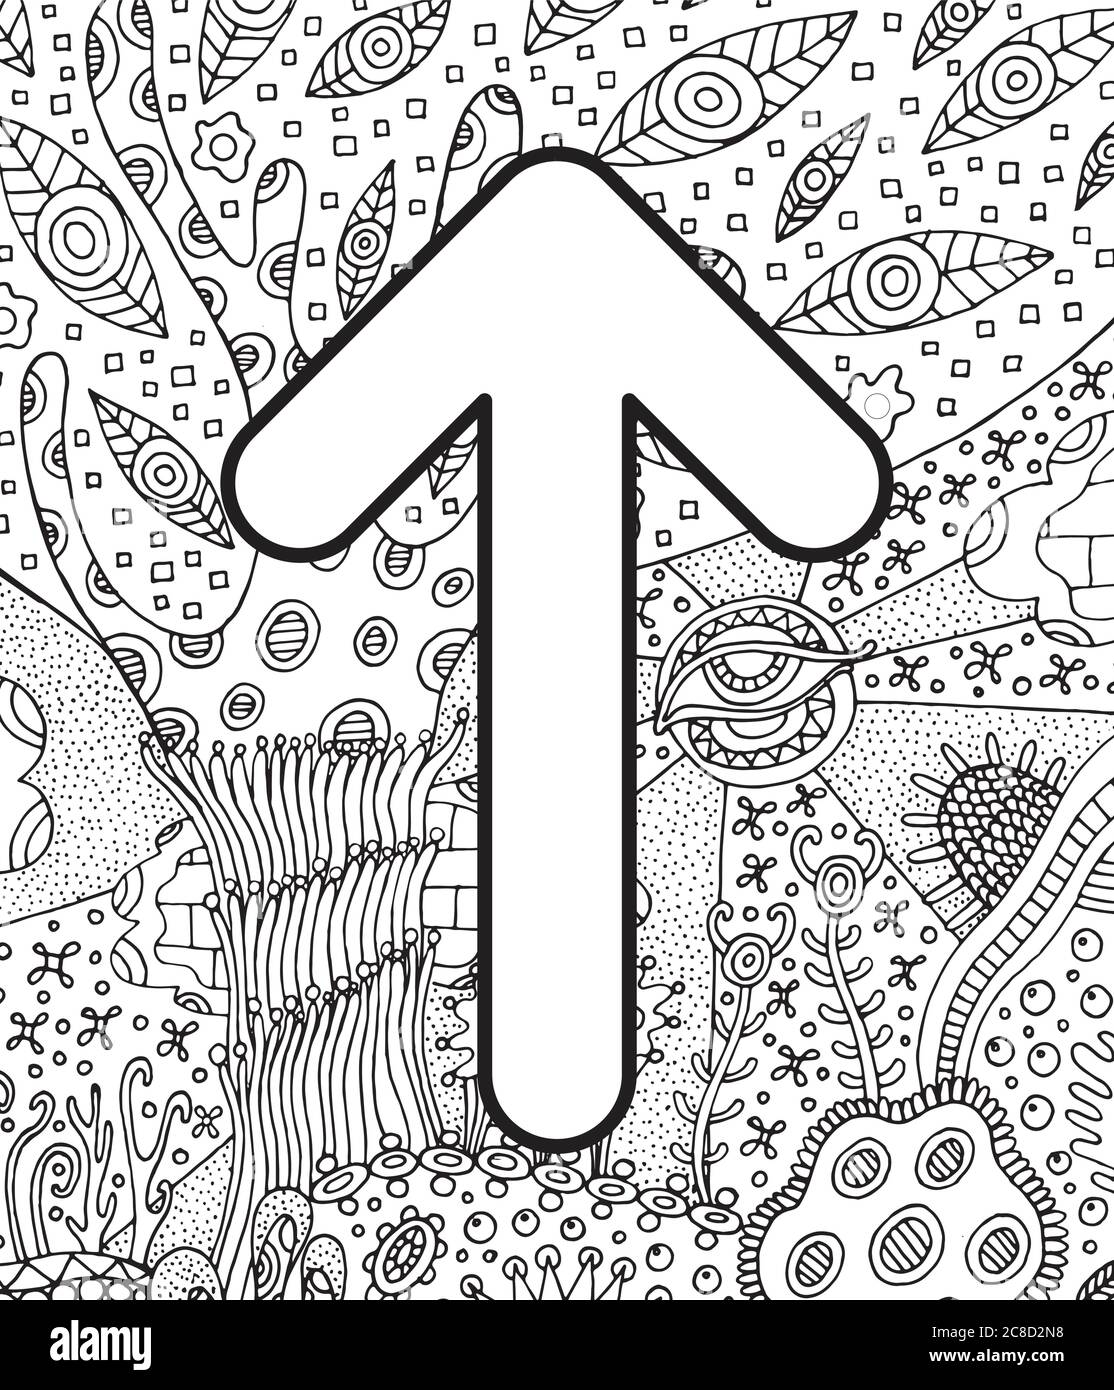 Alte skandinavische Rune teiwaz mit Doodle Ornament Hintergrund. Malseite für Erwachsene. Psychedelisch fantastische mystische Kunstwerke. Vektorgrafik Stock Vektor